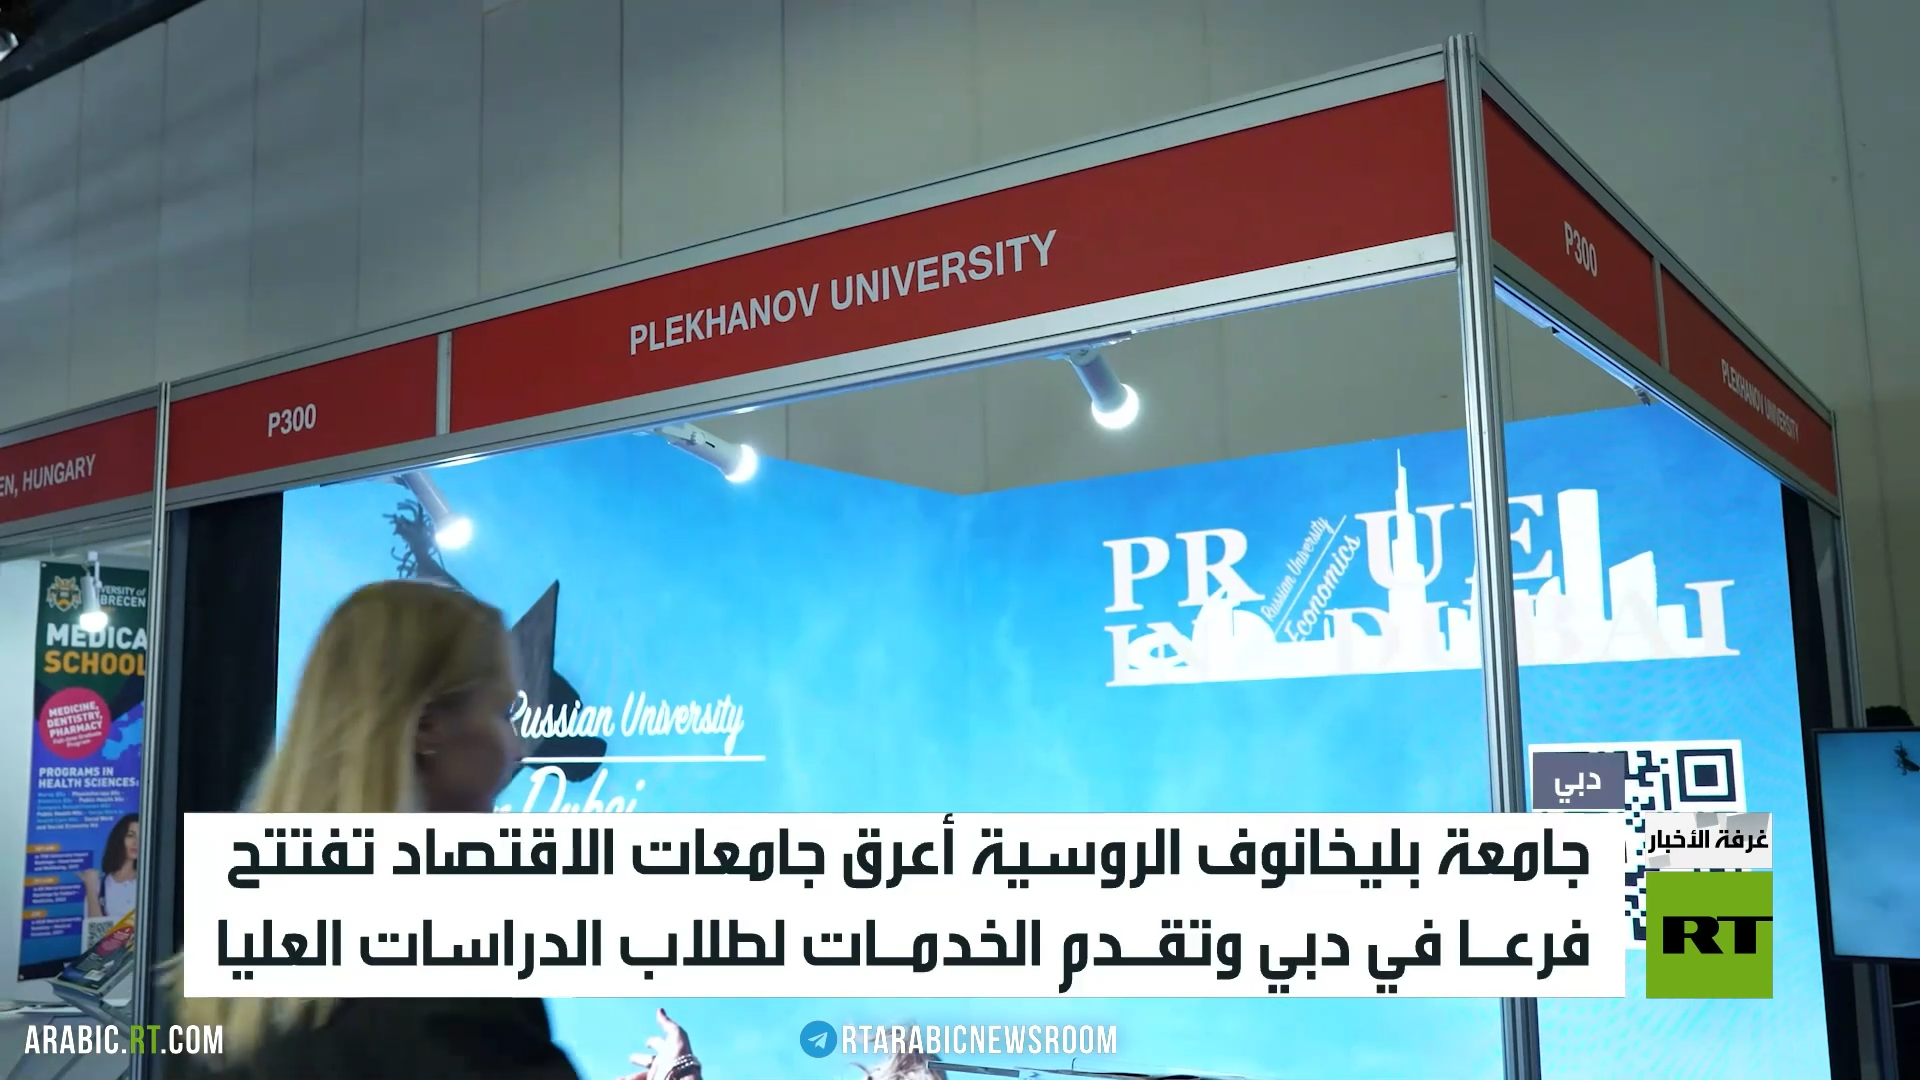 جامعة بليخانوف الروسية تفتتح فرعا في دبي